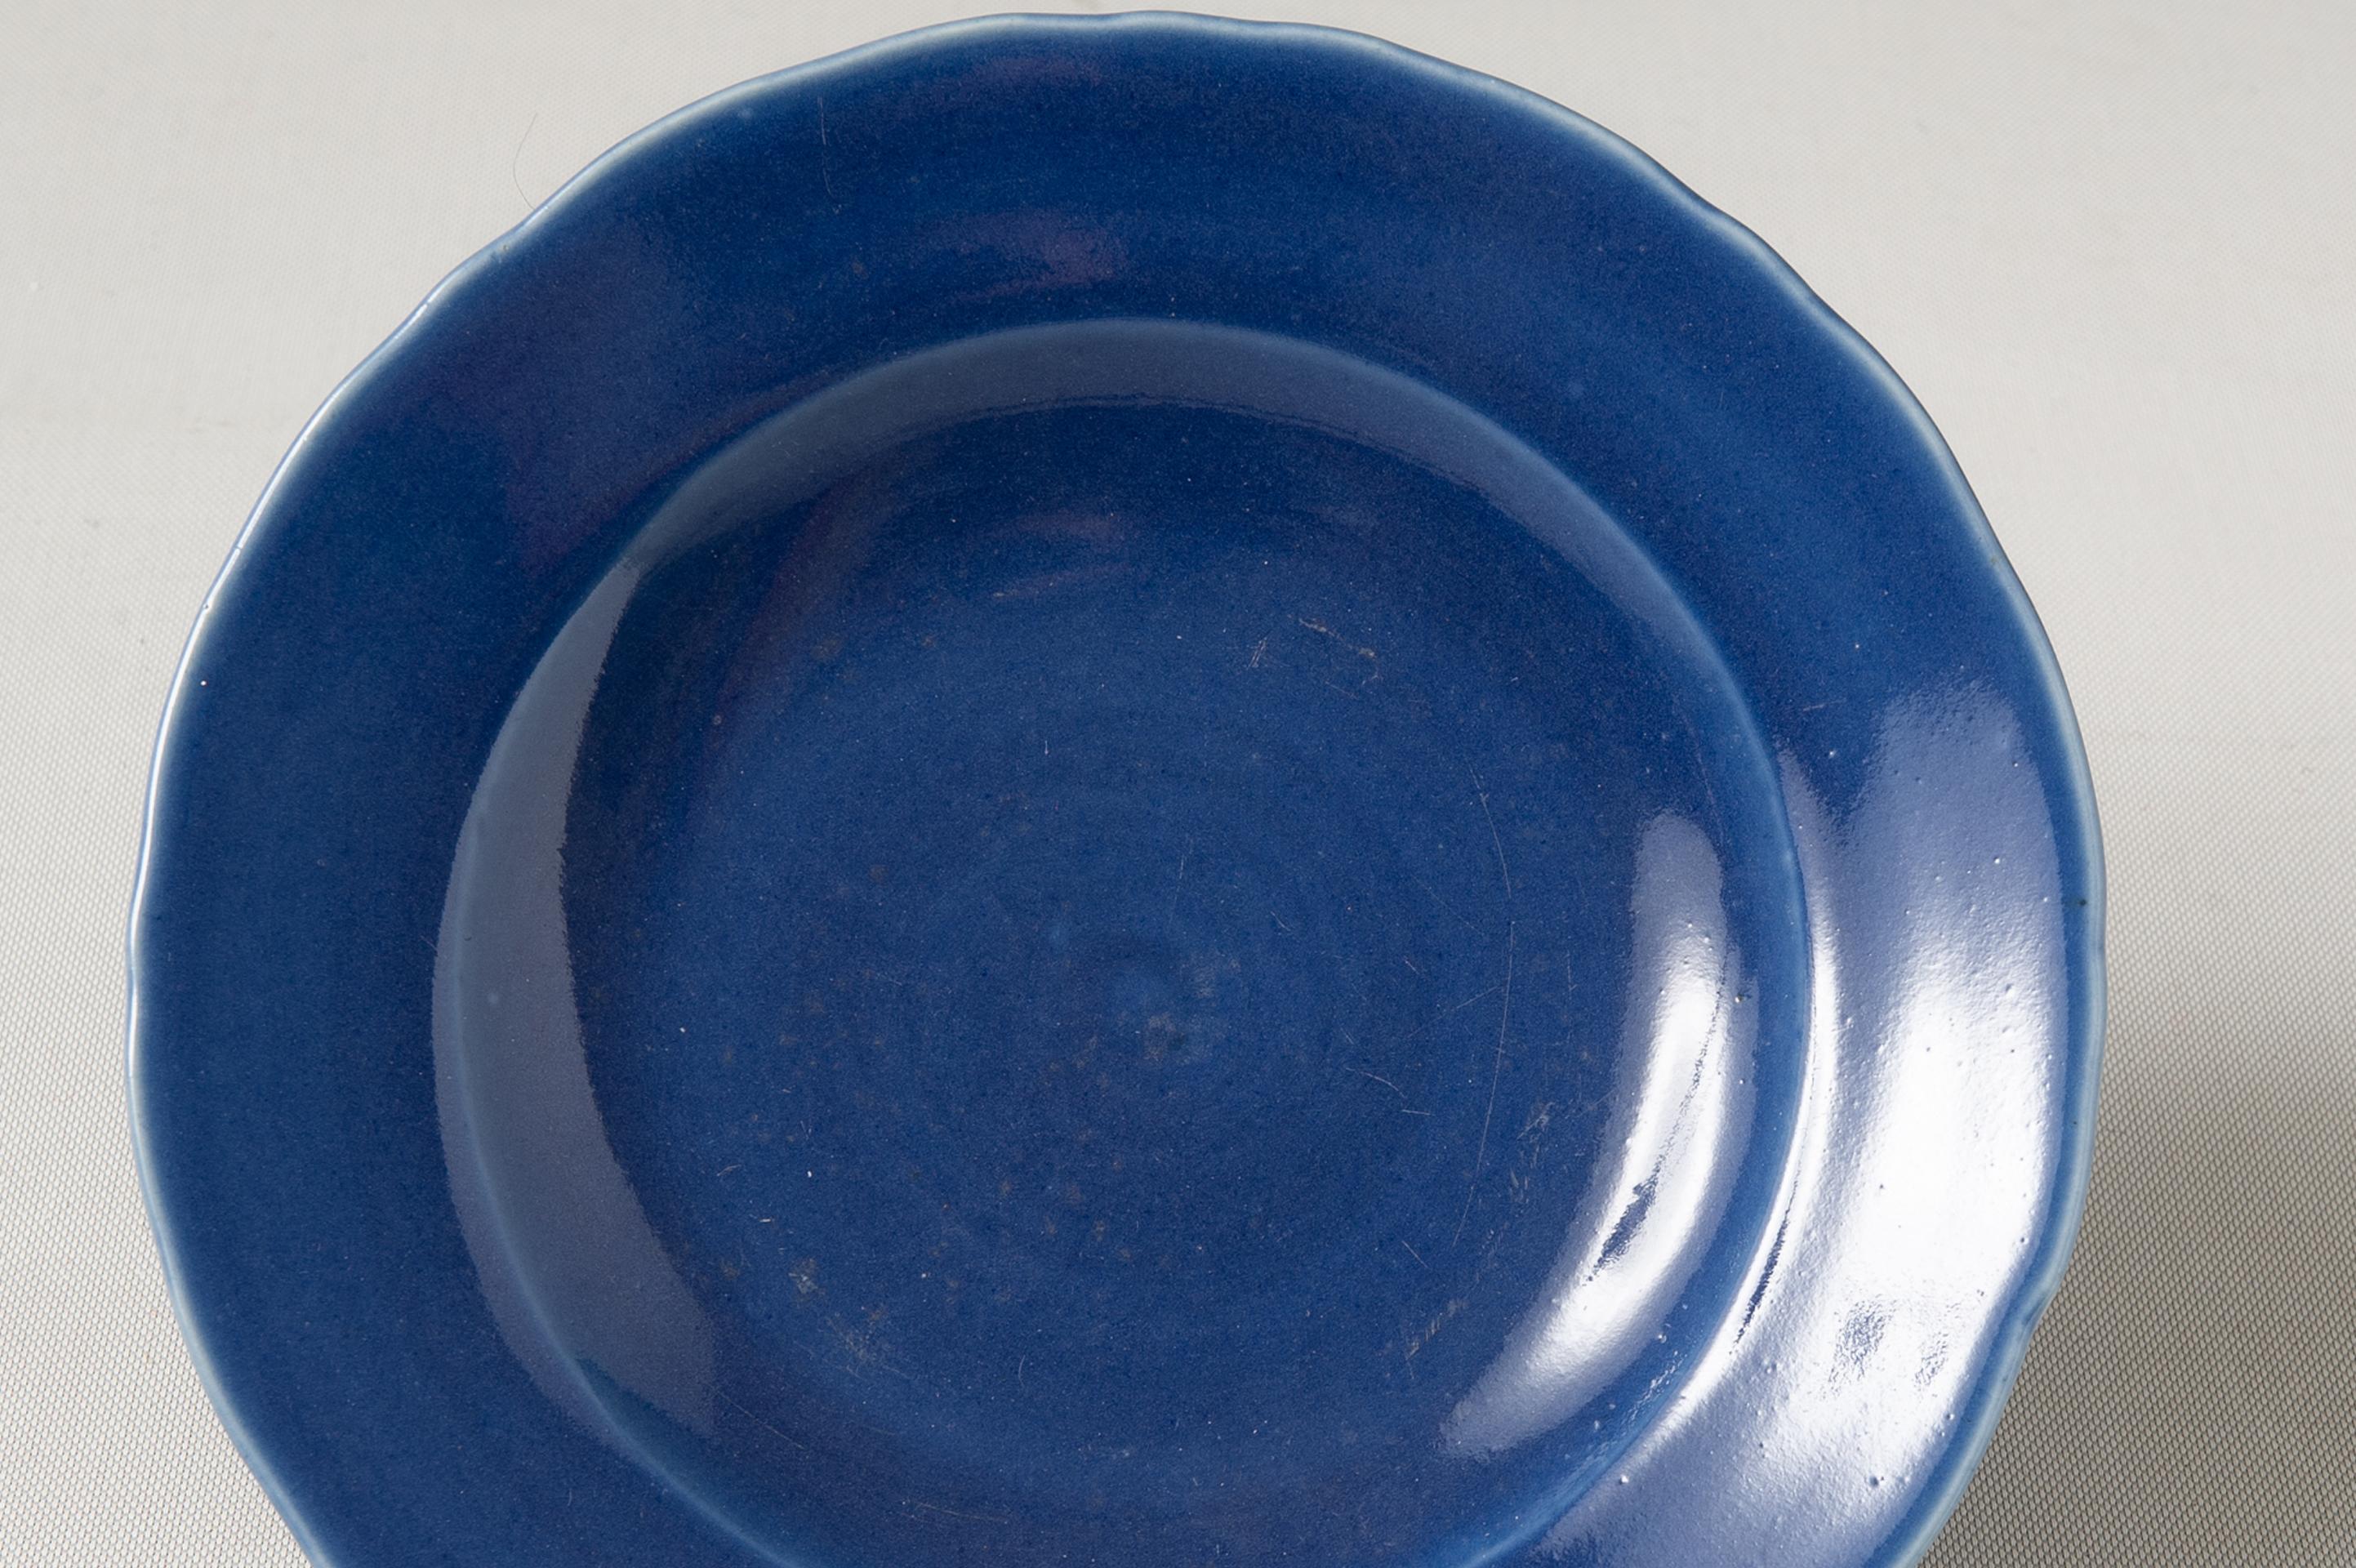 Rein, einfach, elegant, antik aus der 800 Ching-Dynastie: eine blaue Porzellanschale, die man überall hinstellen, bewundern und benutzen kann
wenn Sie Ihren Gästen etwas anbieten möchten.
Sehen Sie alle Collection'S unter meinem Namen Enrica